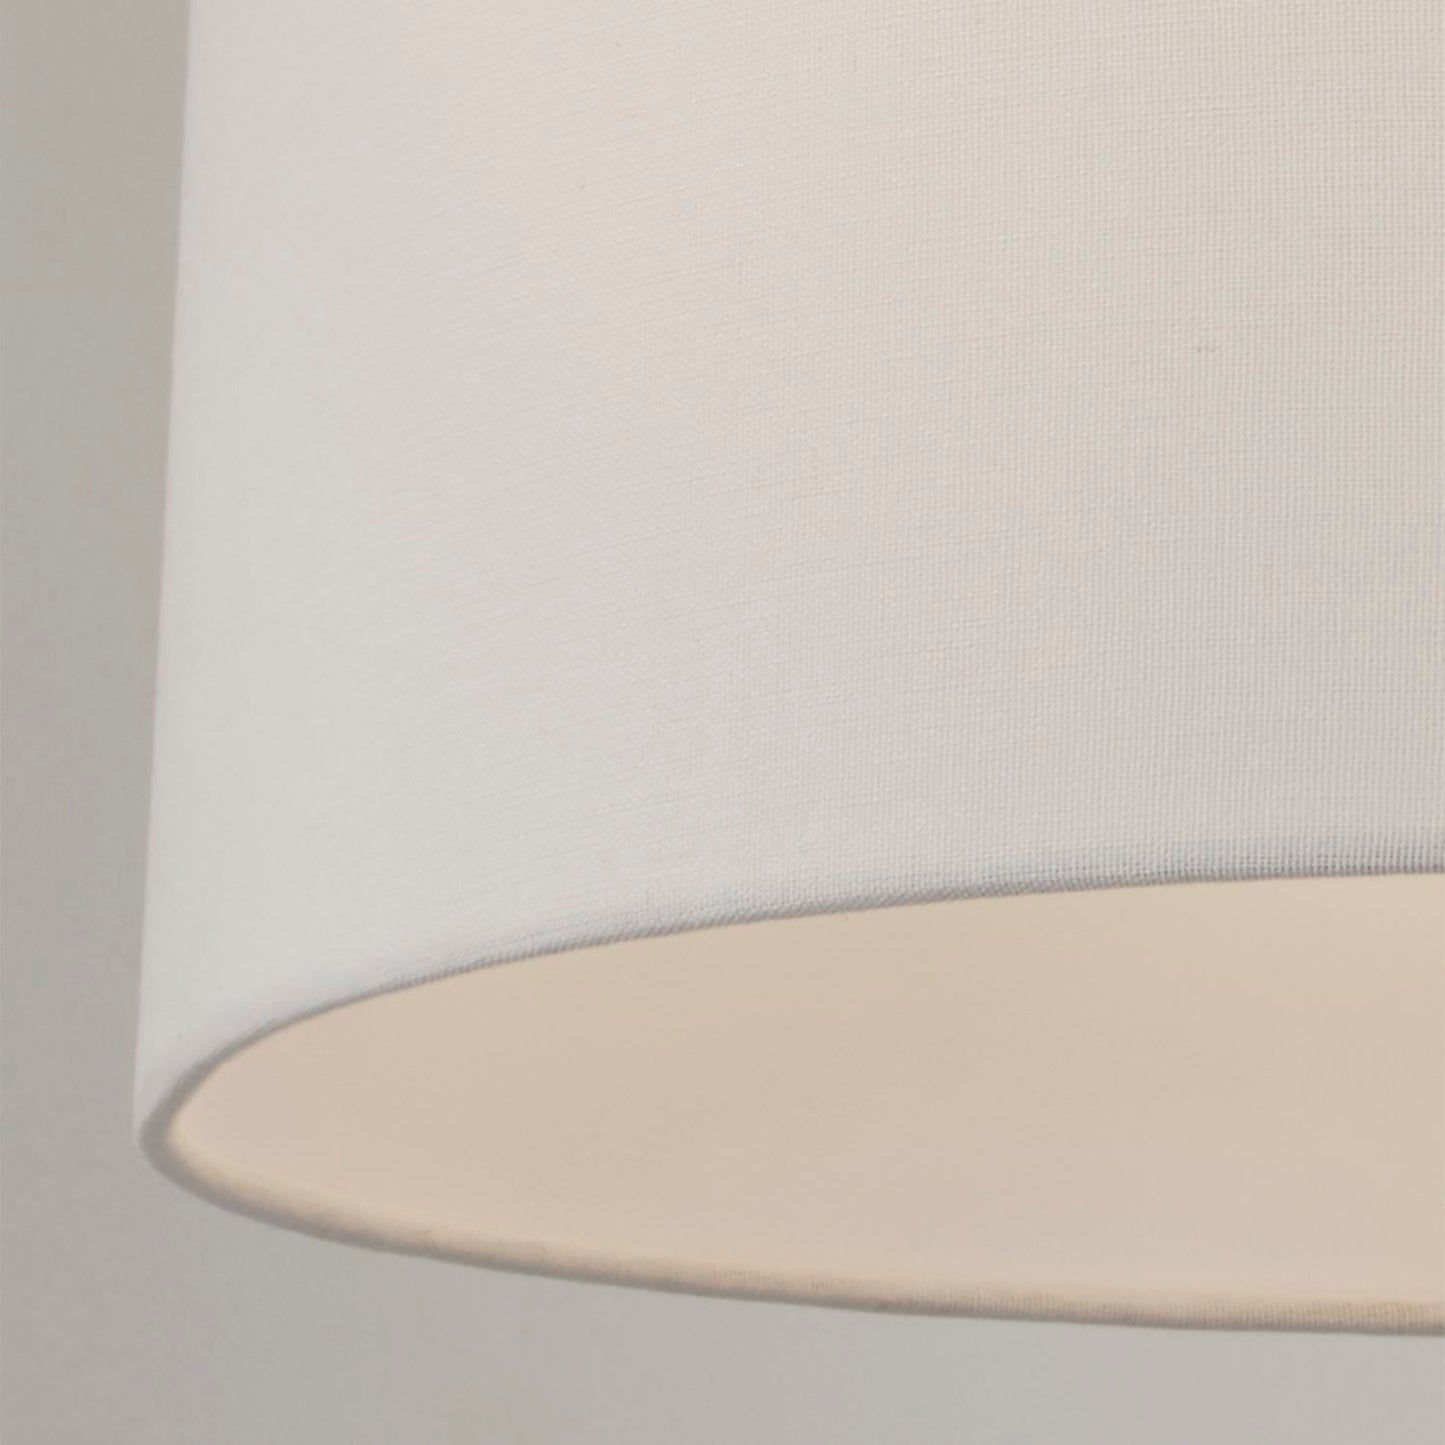 Ivory Tapered Linen Light Shade (40cm)